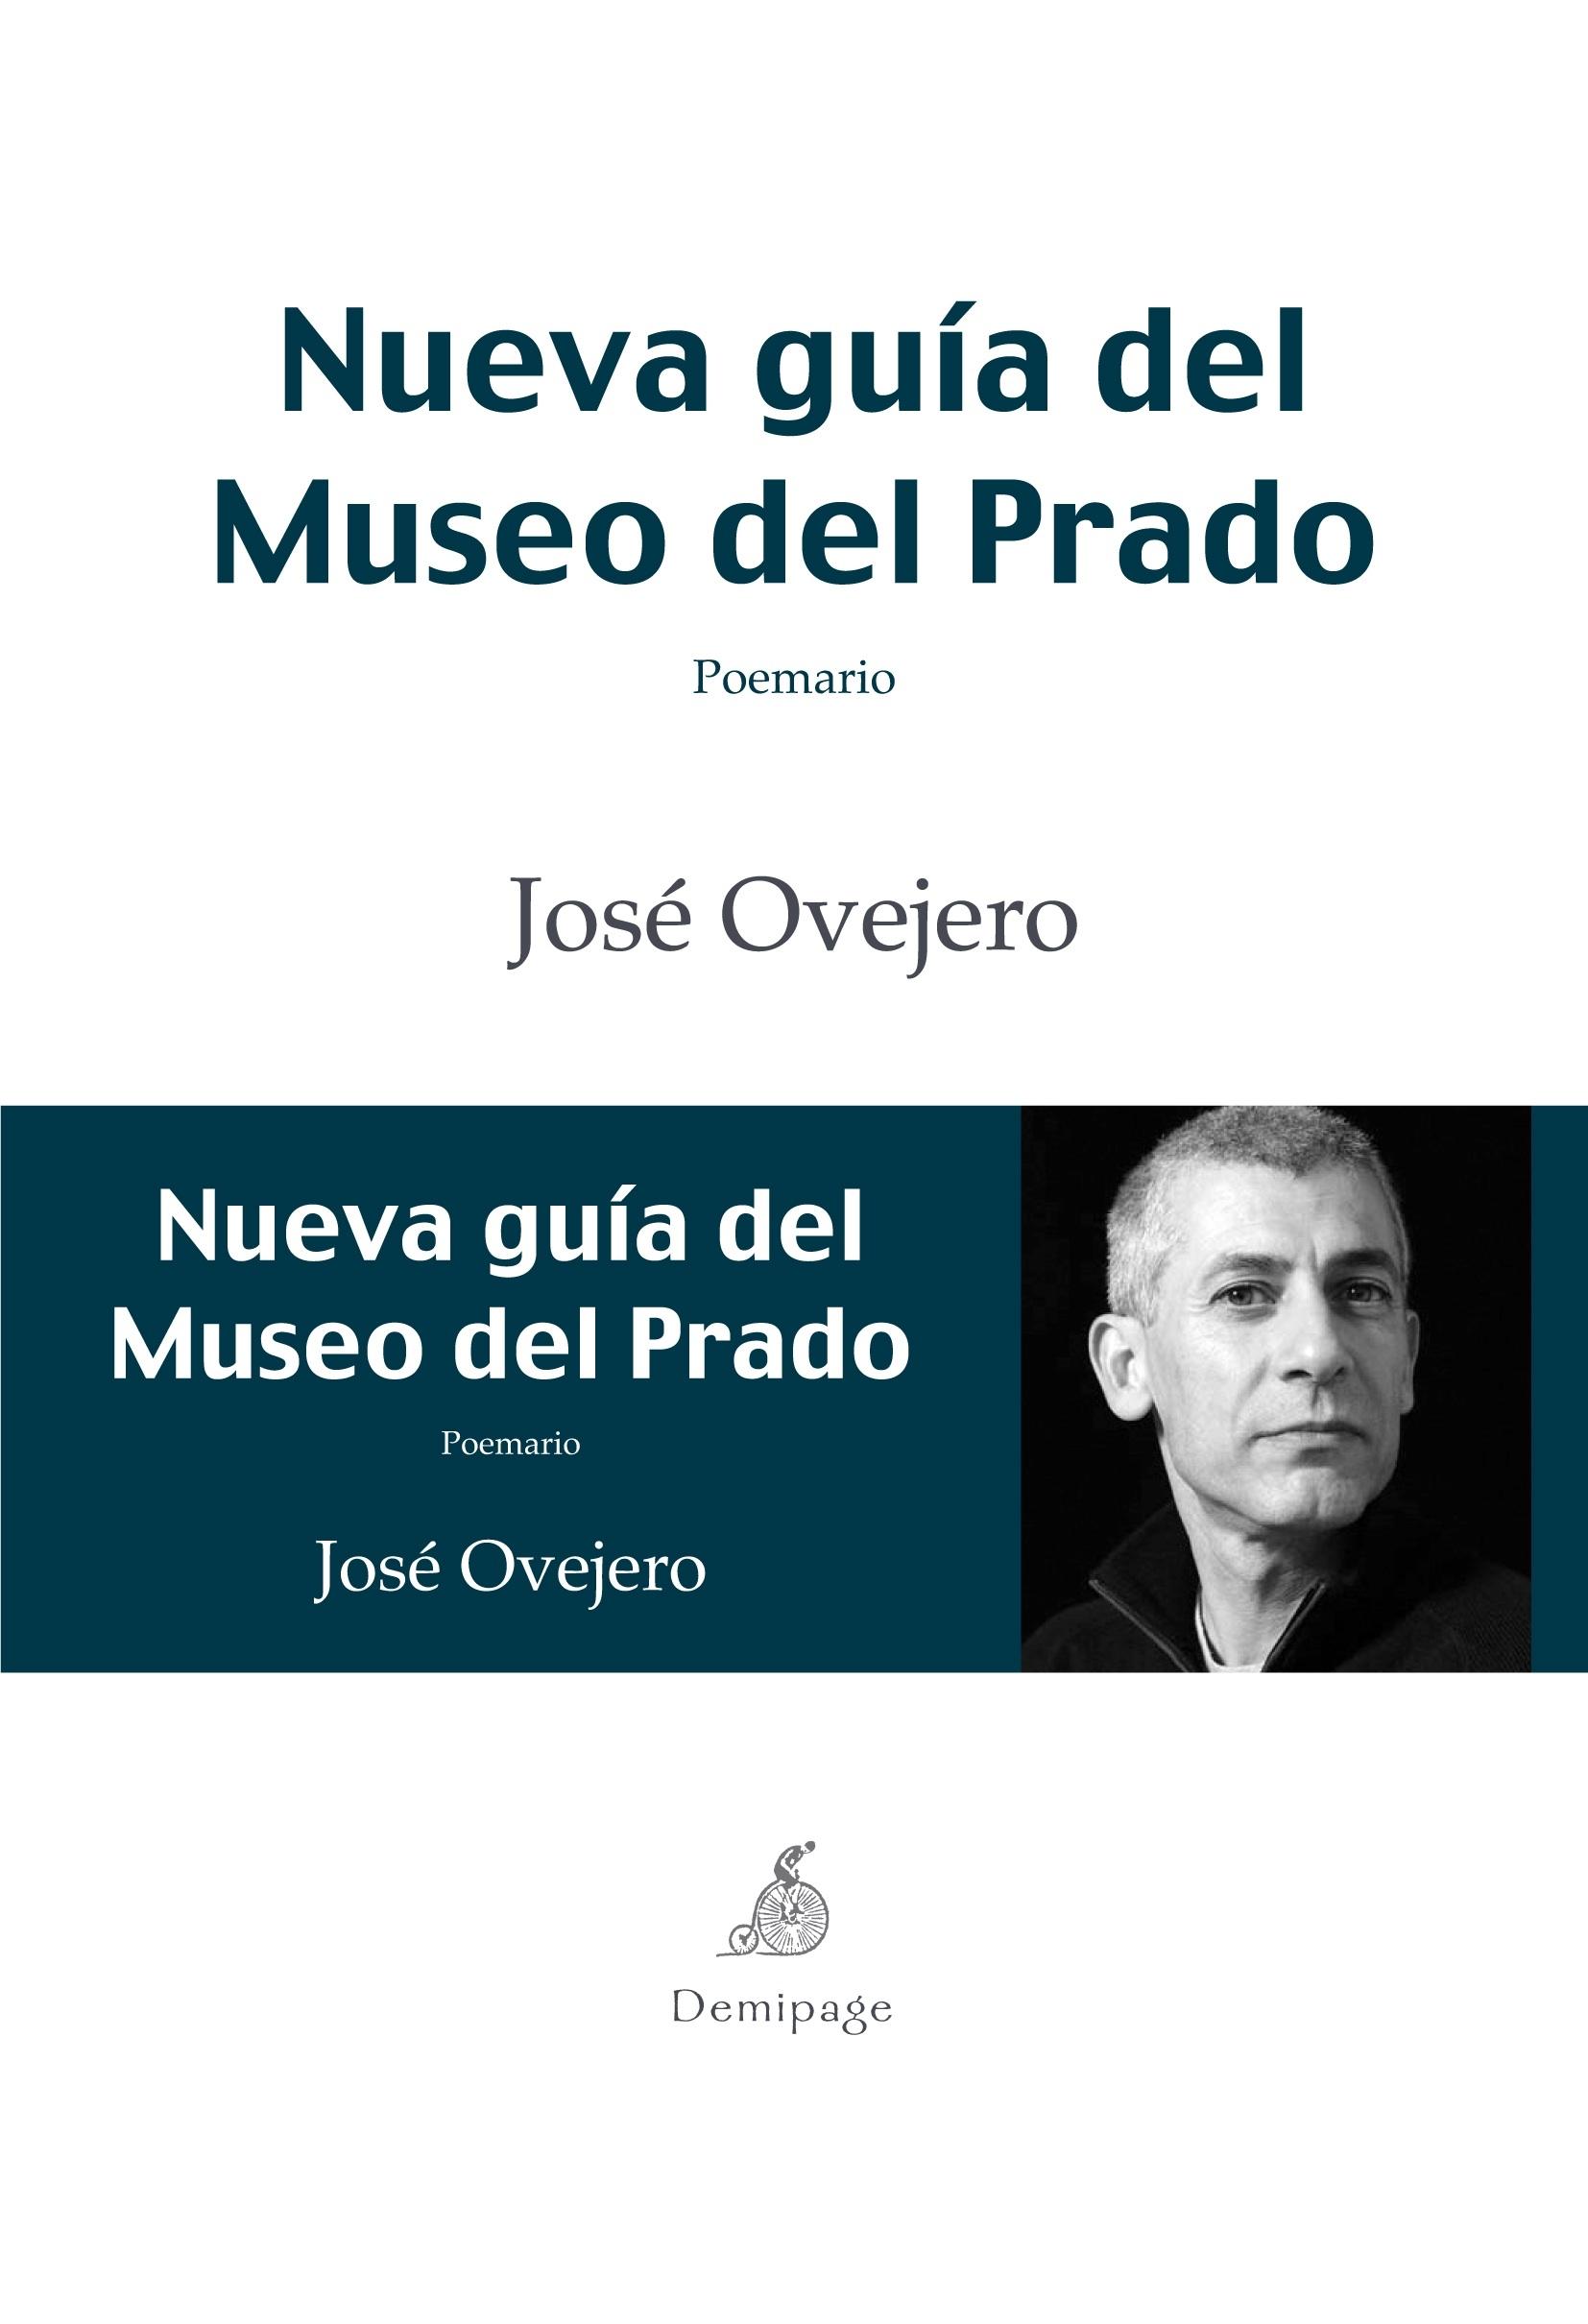 Nueva guia del Museo del Prado "Poemario"